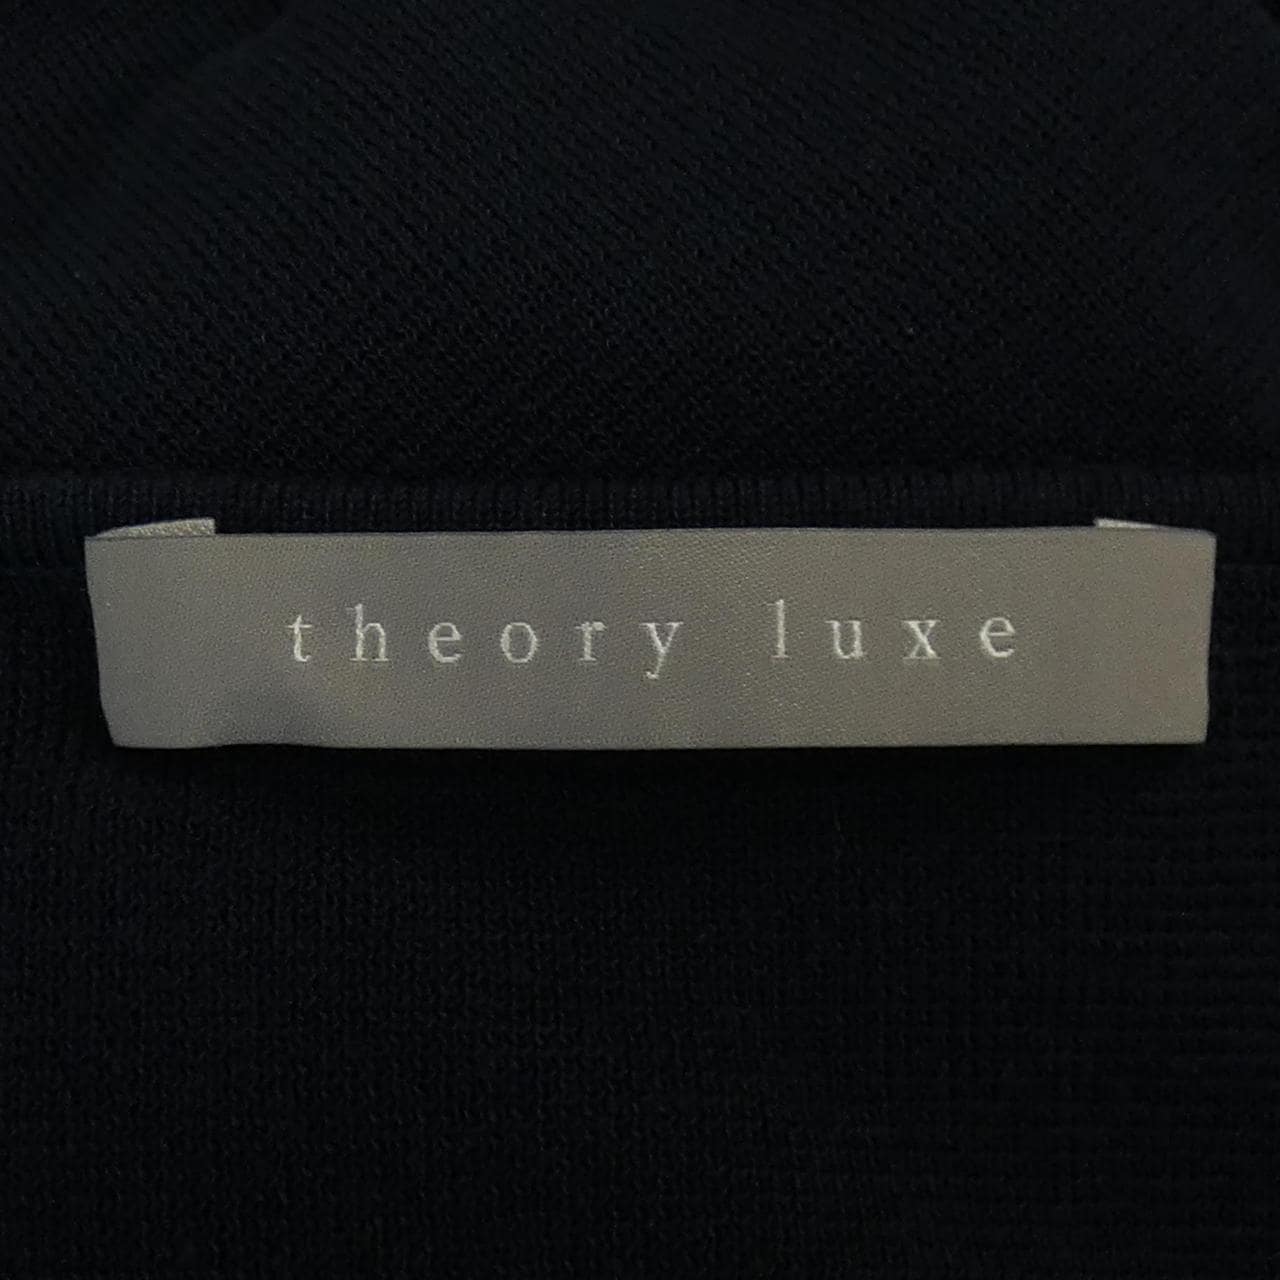 セオリーリュクス Theory luxe ワンピース